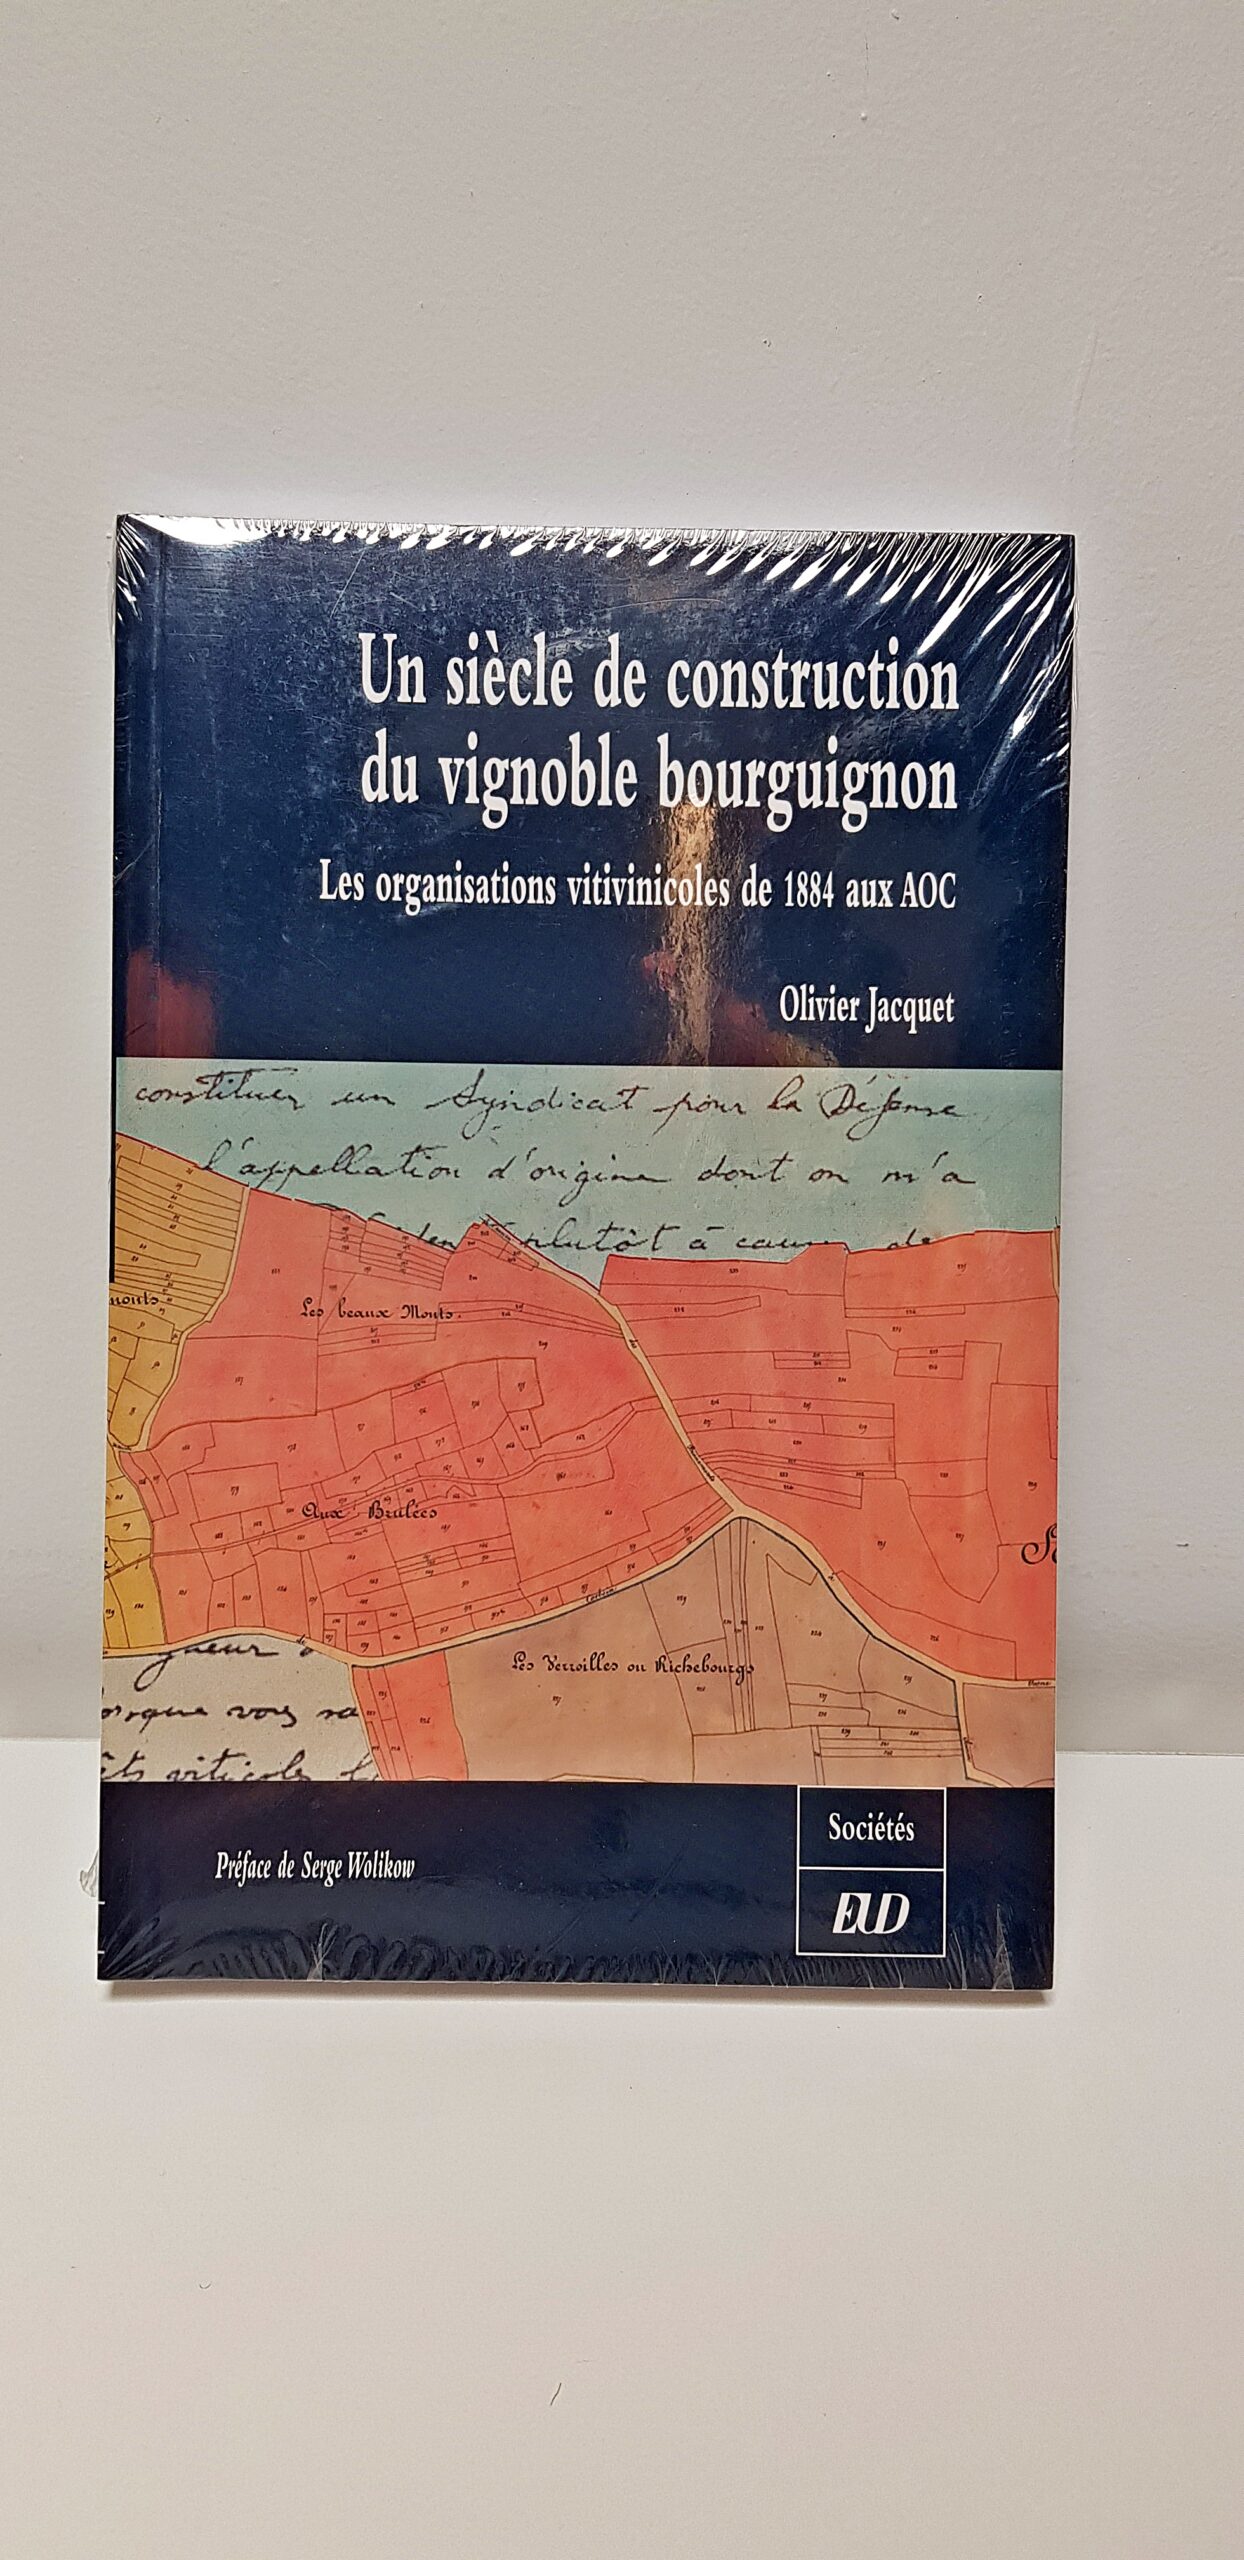 Livre “Un siècle de construction du vignoble bourguignon” de Olivier Jacquet